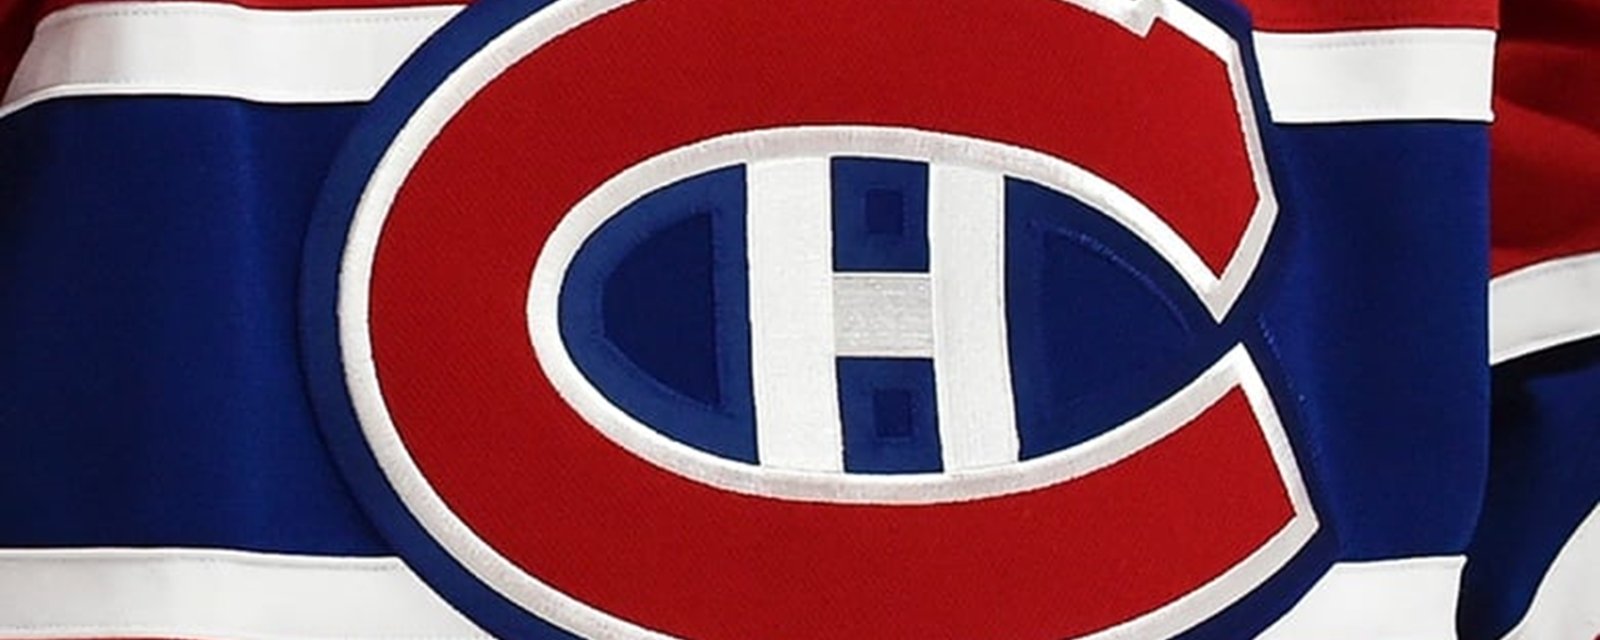 Un espoir du Canadien quitte pour la KHL